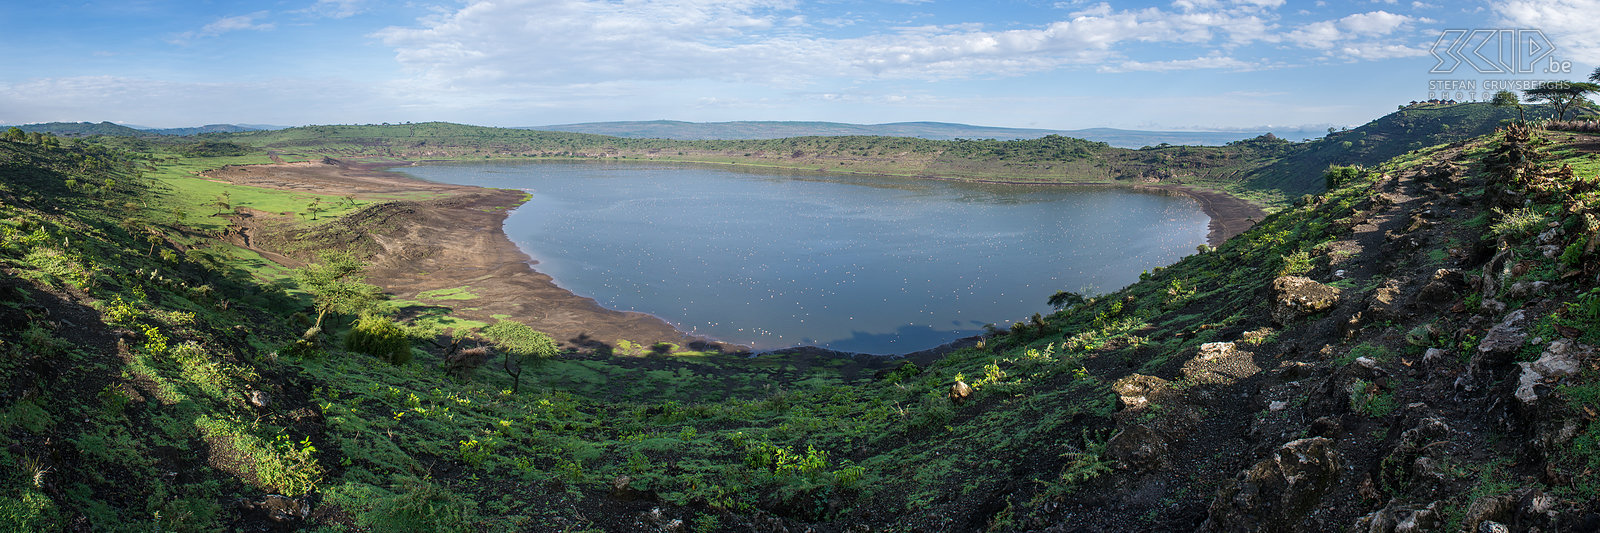 Lake Chitu Abiata-Shala nationaal park ligt op 290 km ten zuiden van Addis Abeba en op een hoogte die schommelt tussen 1540-2075 meter. Als safari park stelt Abiata-Shalla helemaal niets voor maar toch konden we er een paar antilopen, wrattenzwijnen en struisvogels spotten. De meren Lake Abiata en het kleine maar mooie Lake Chitu zijn echter veel interessanter. Blauwgroene algen bieden het hele jaar door voedsel voor meer dan 10 000 flamingo's. We verbleven in de '10 000 flamingo’s lodge' die uitkijkt op het kleine Lake Chitu. Stefan Cruysberghs